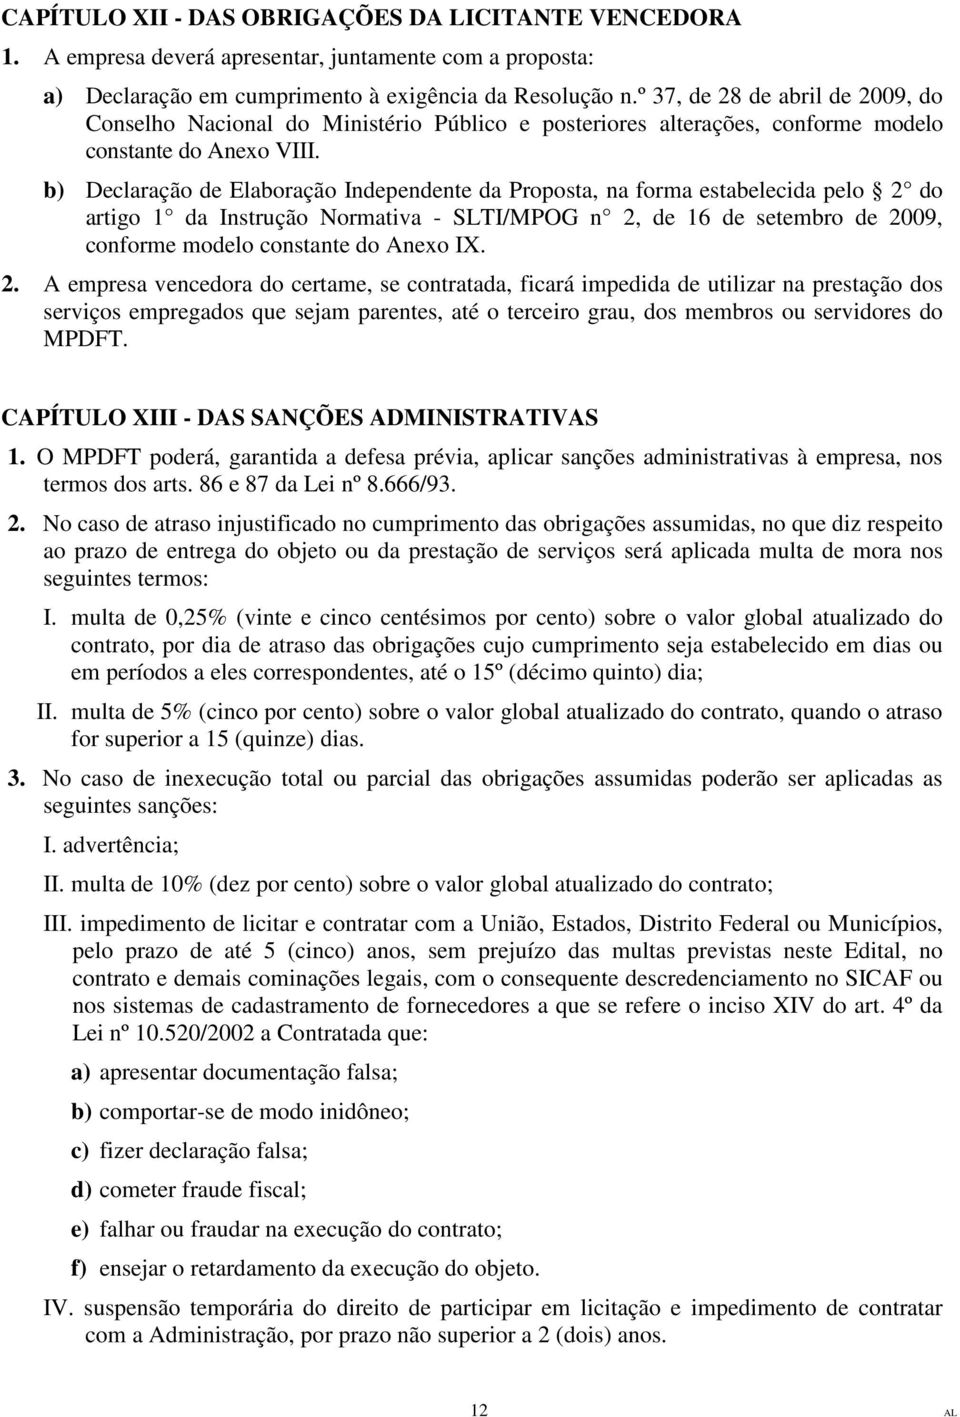 b) Declaração de Elaboração Independente da Proposta, na forma estabelecida pelo 2 do artigo 1 da Instrução Normativa - SLTI/MPOG n 2, de 16 de setembro de 2009, conforme modelo constante do Anexo IX.